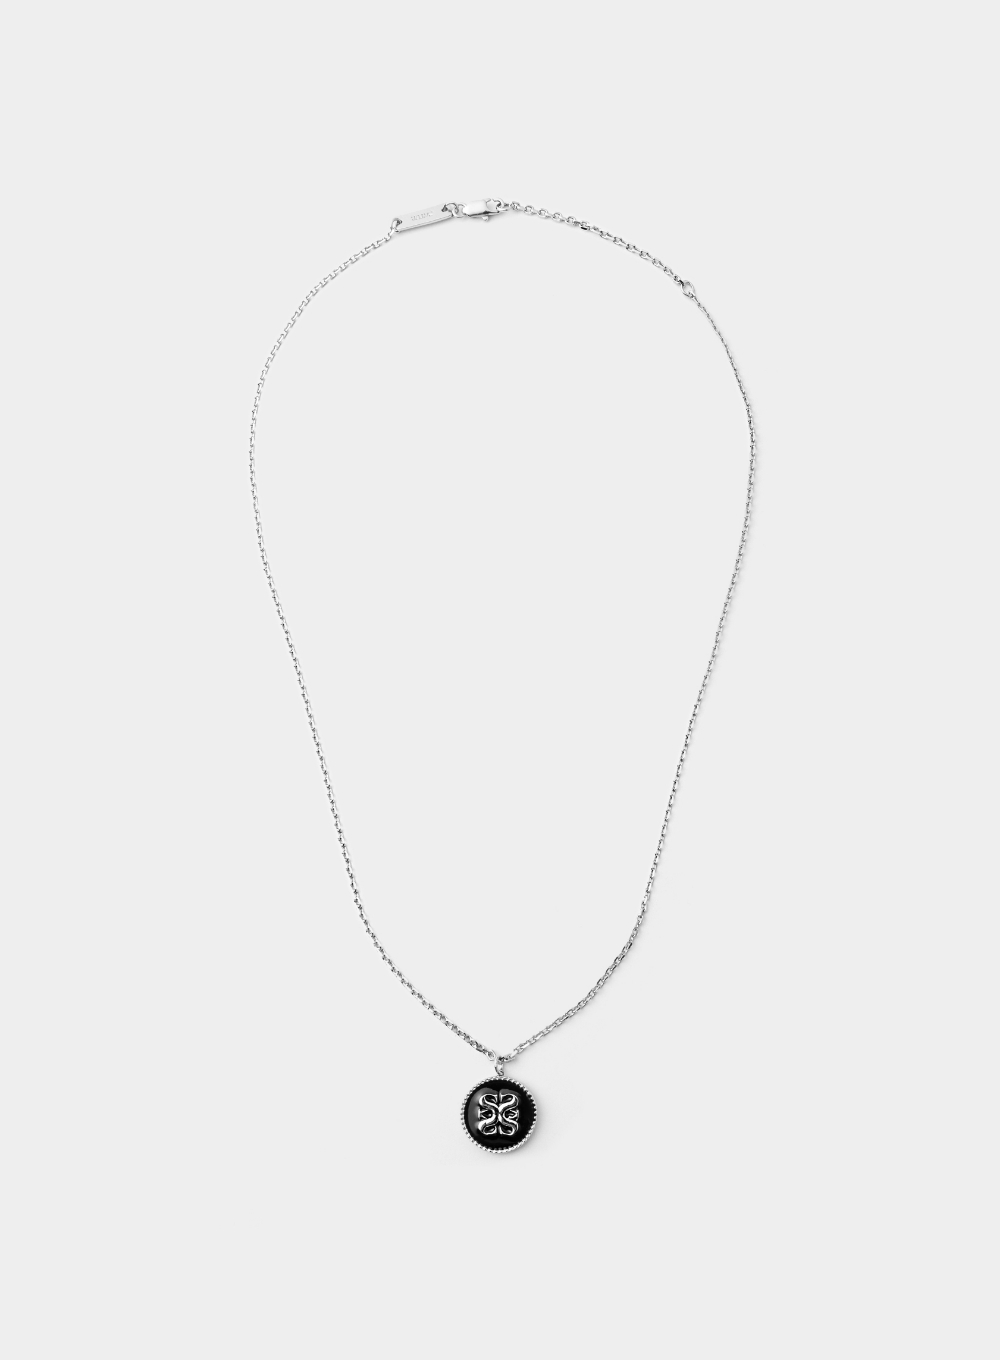 Apero Black Coin Necklace - Silver